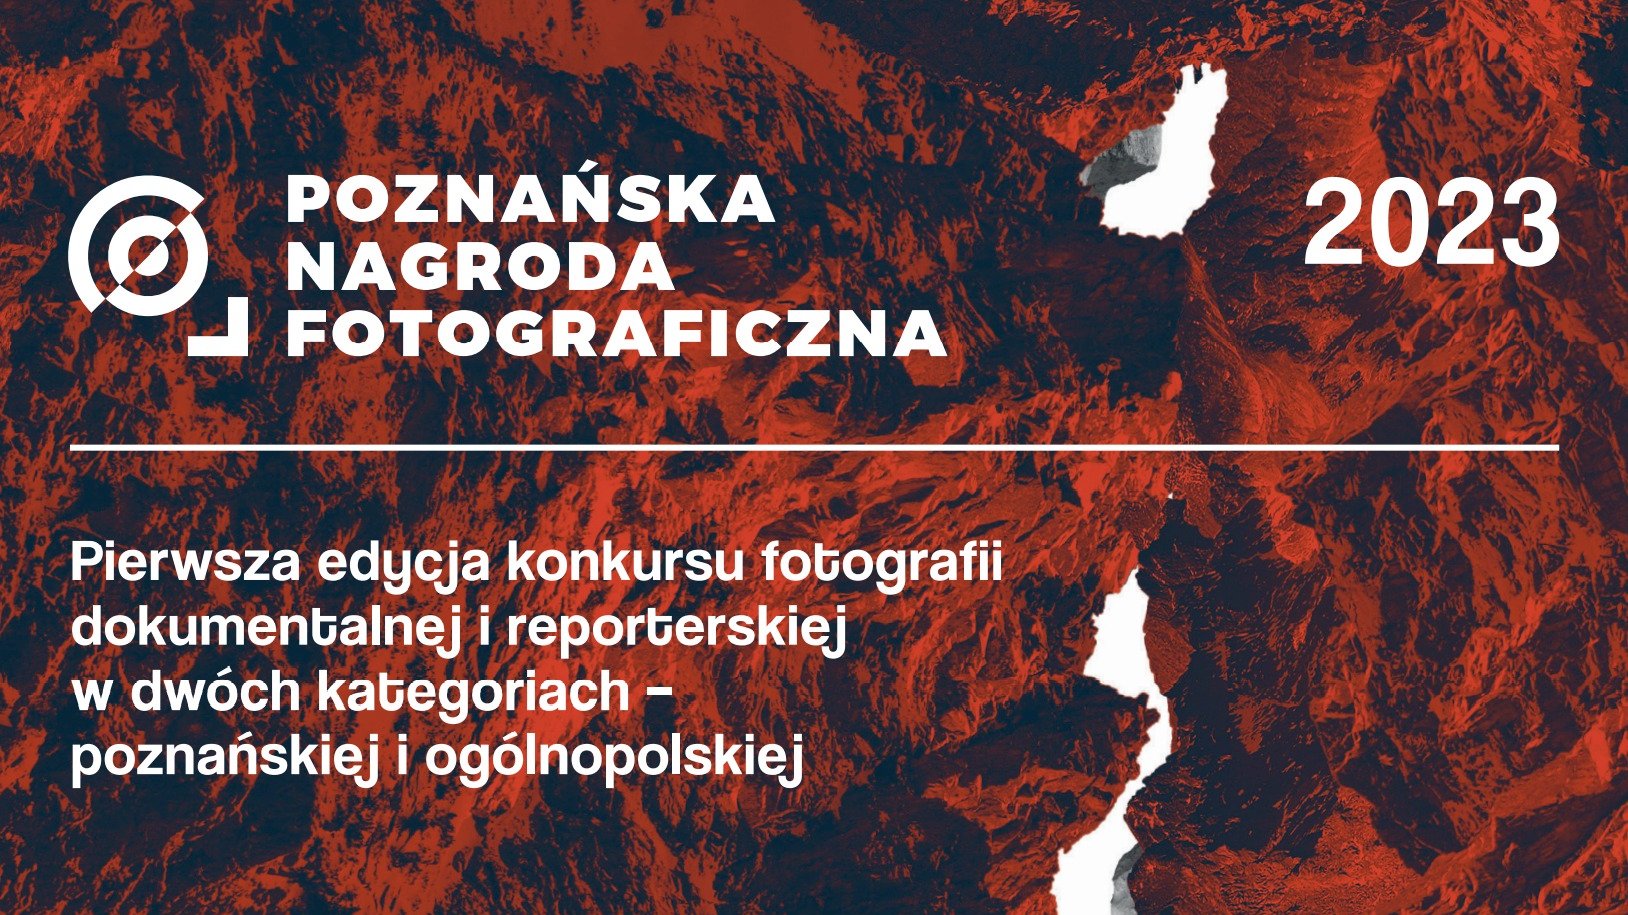 Galeria zdjęć przedstawia grafiki z najważniejszymi informacjami dotyczącymi konkursu Poznańska Nagroda Fotograficzna.